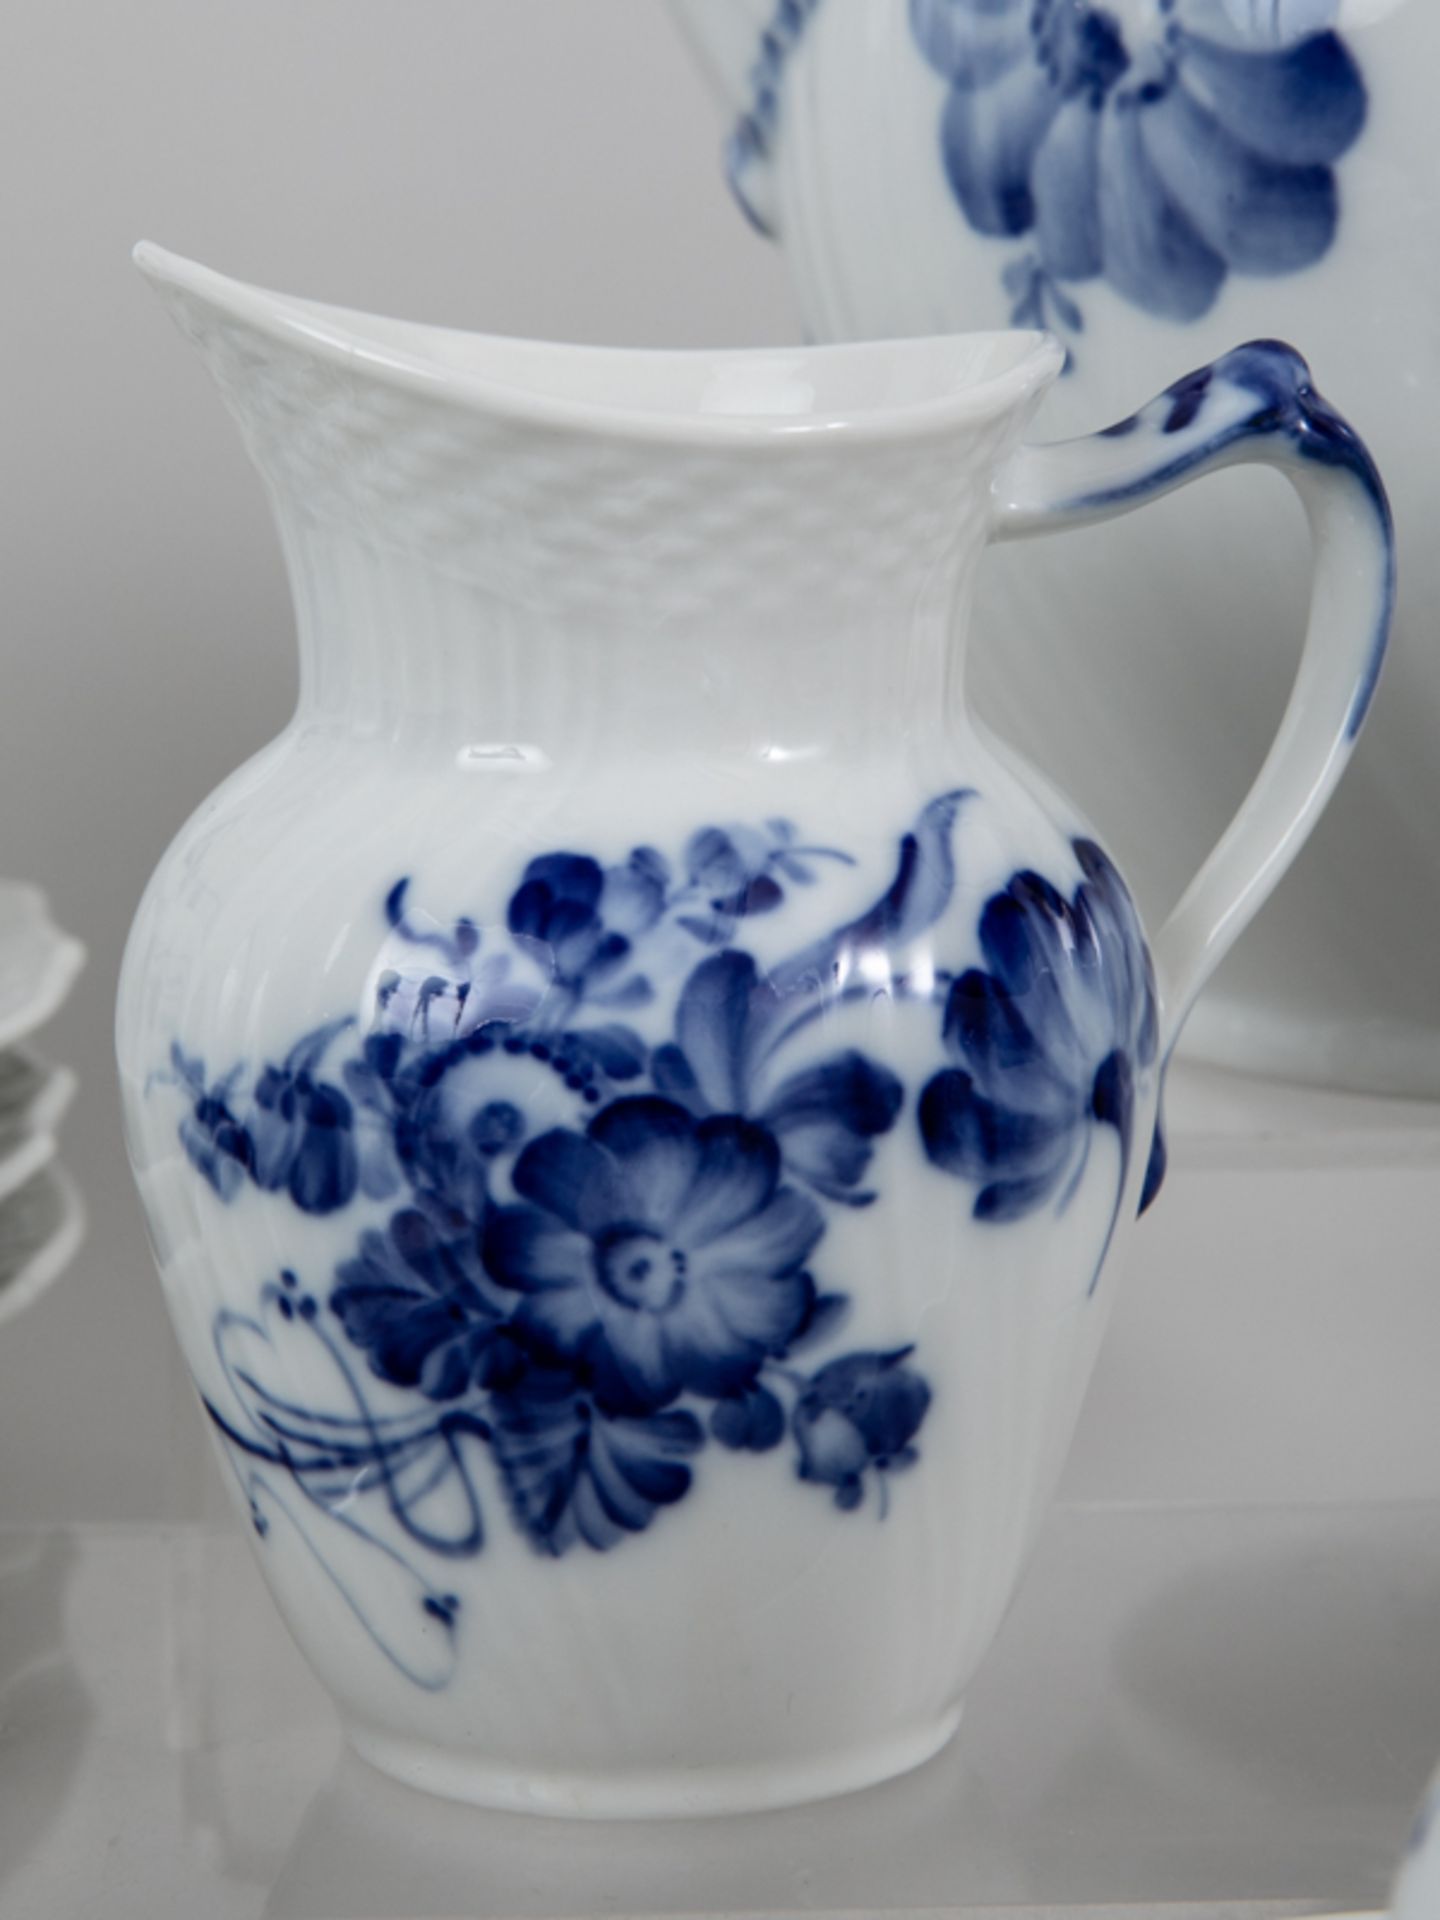 41-tlg. Kaffee-Service, "Blaue Blume", Royal Copenhagen, 20. Jh. Weißporzellan mit unter Glasu - Image 2 of 3